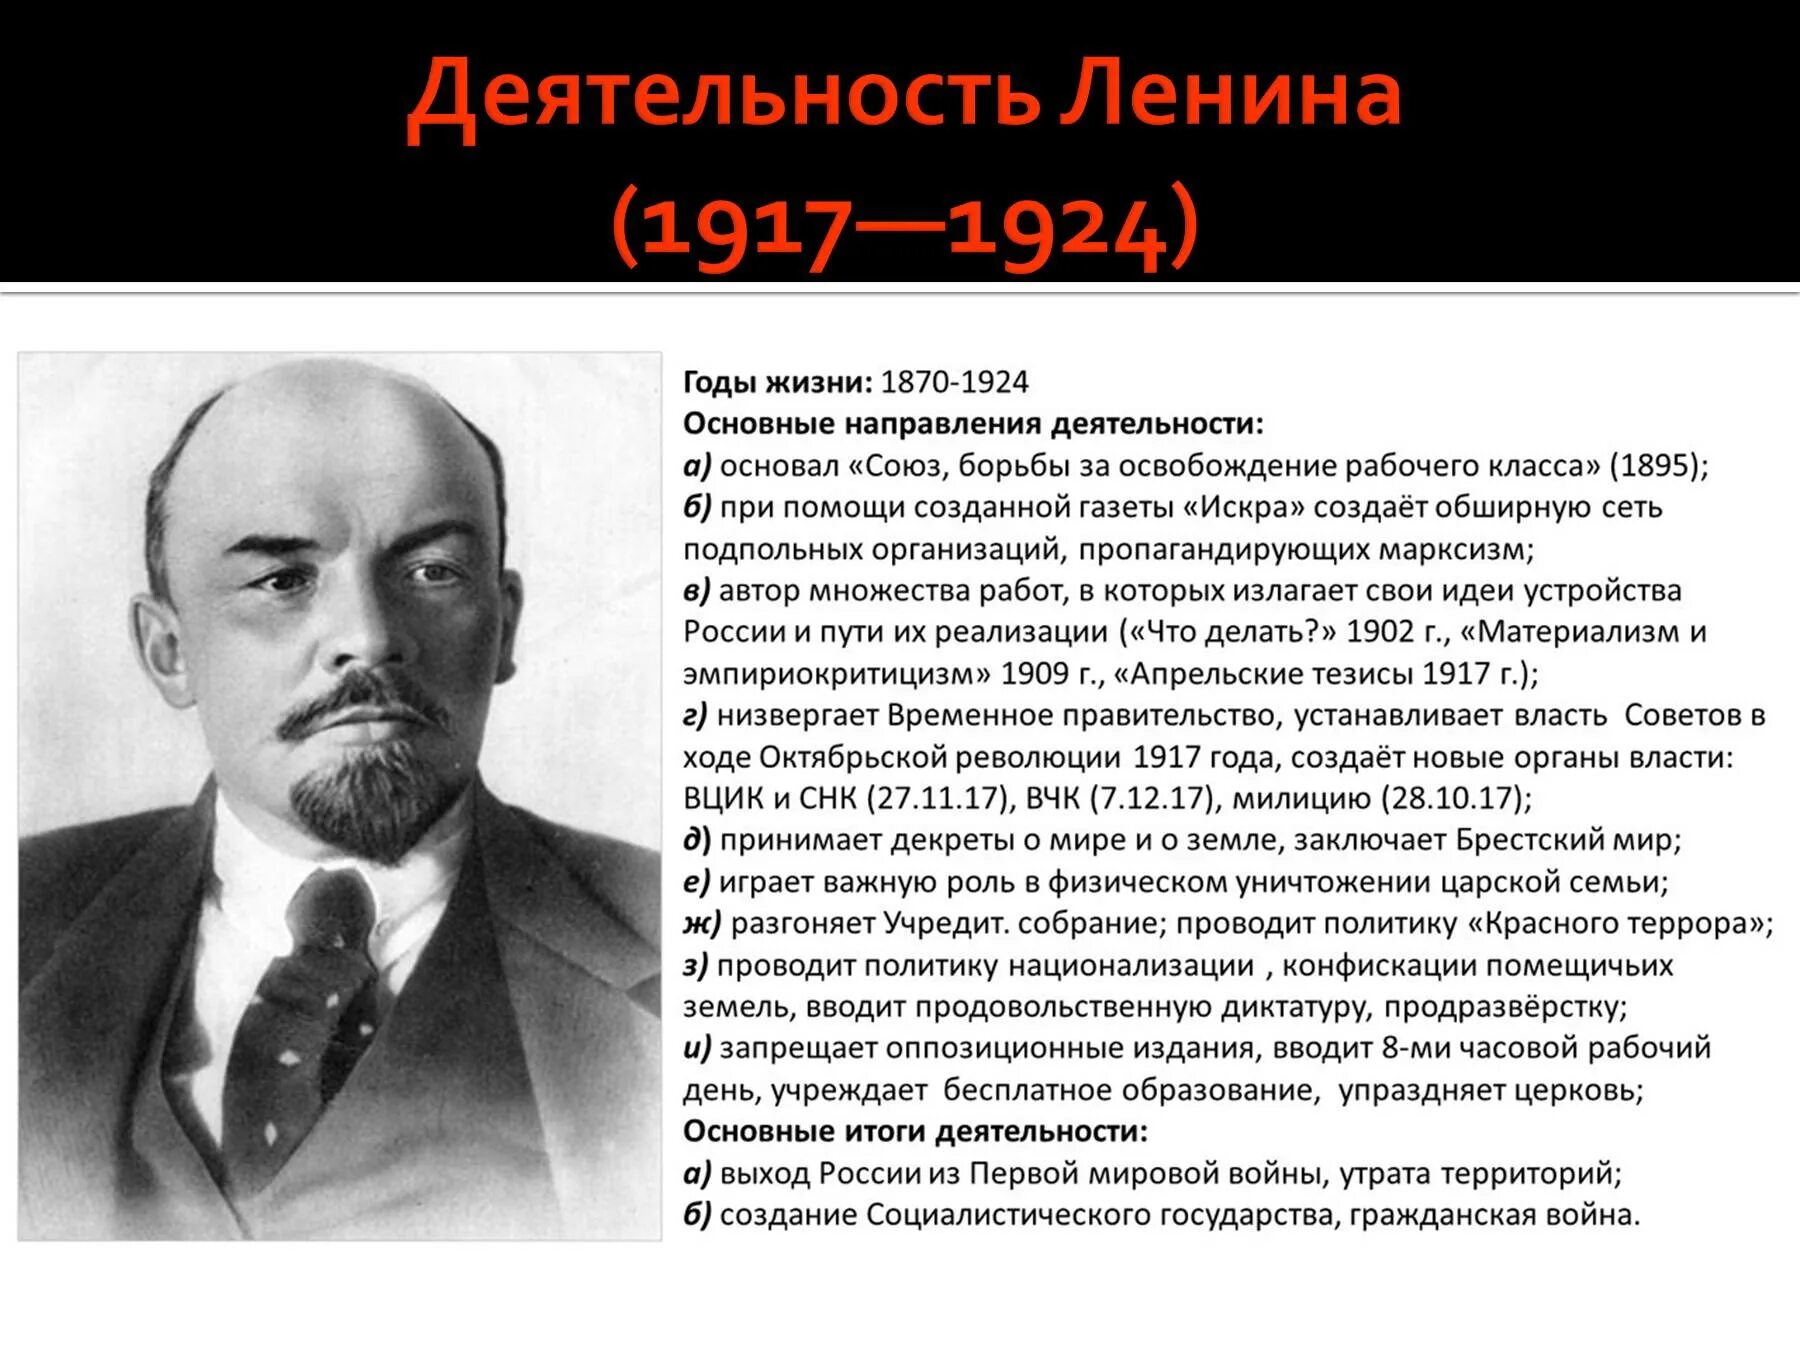 Портрет политических деятелей. Деятельность Ленина в 1917 году. Исторический портрет Ленина 1917 год.